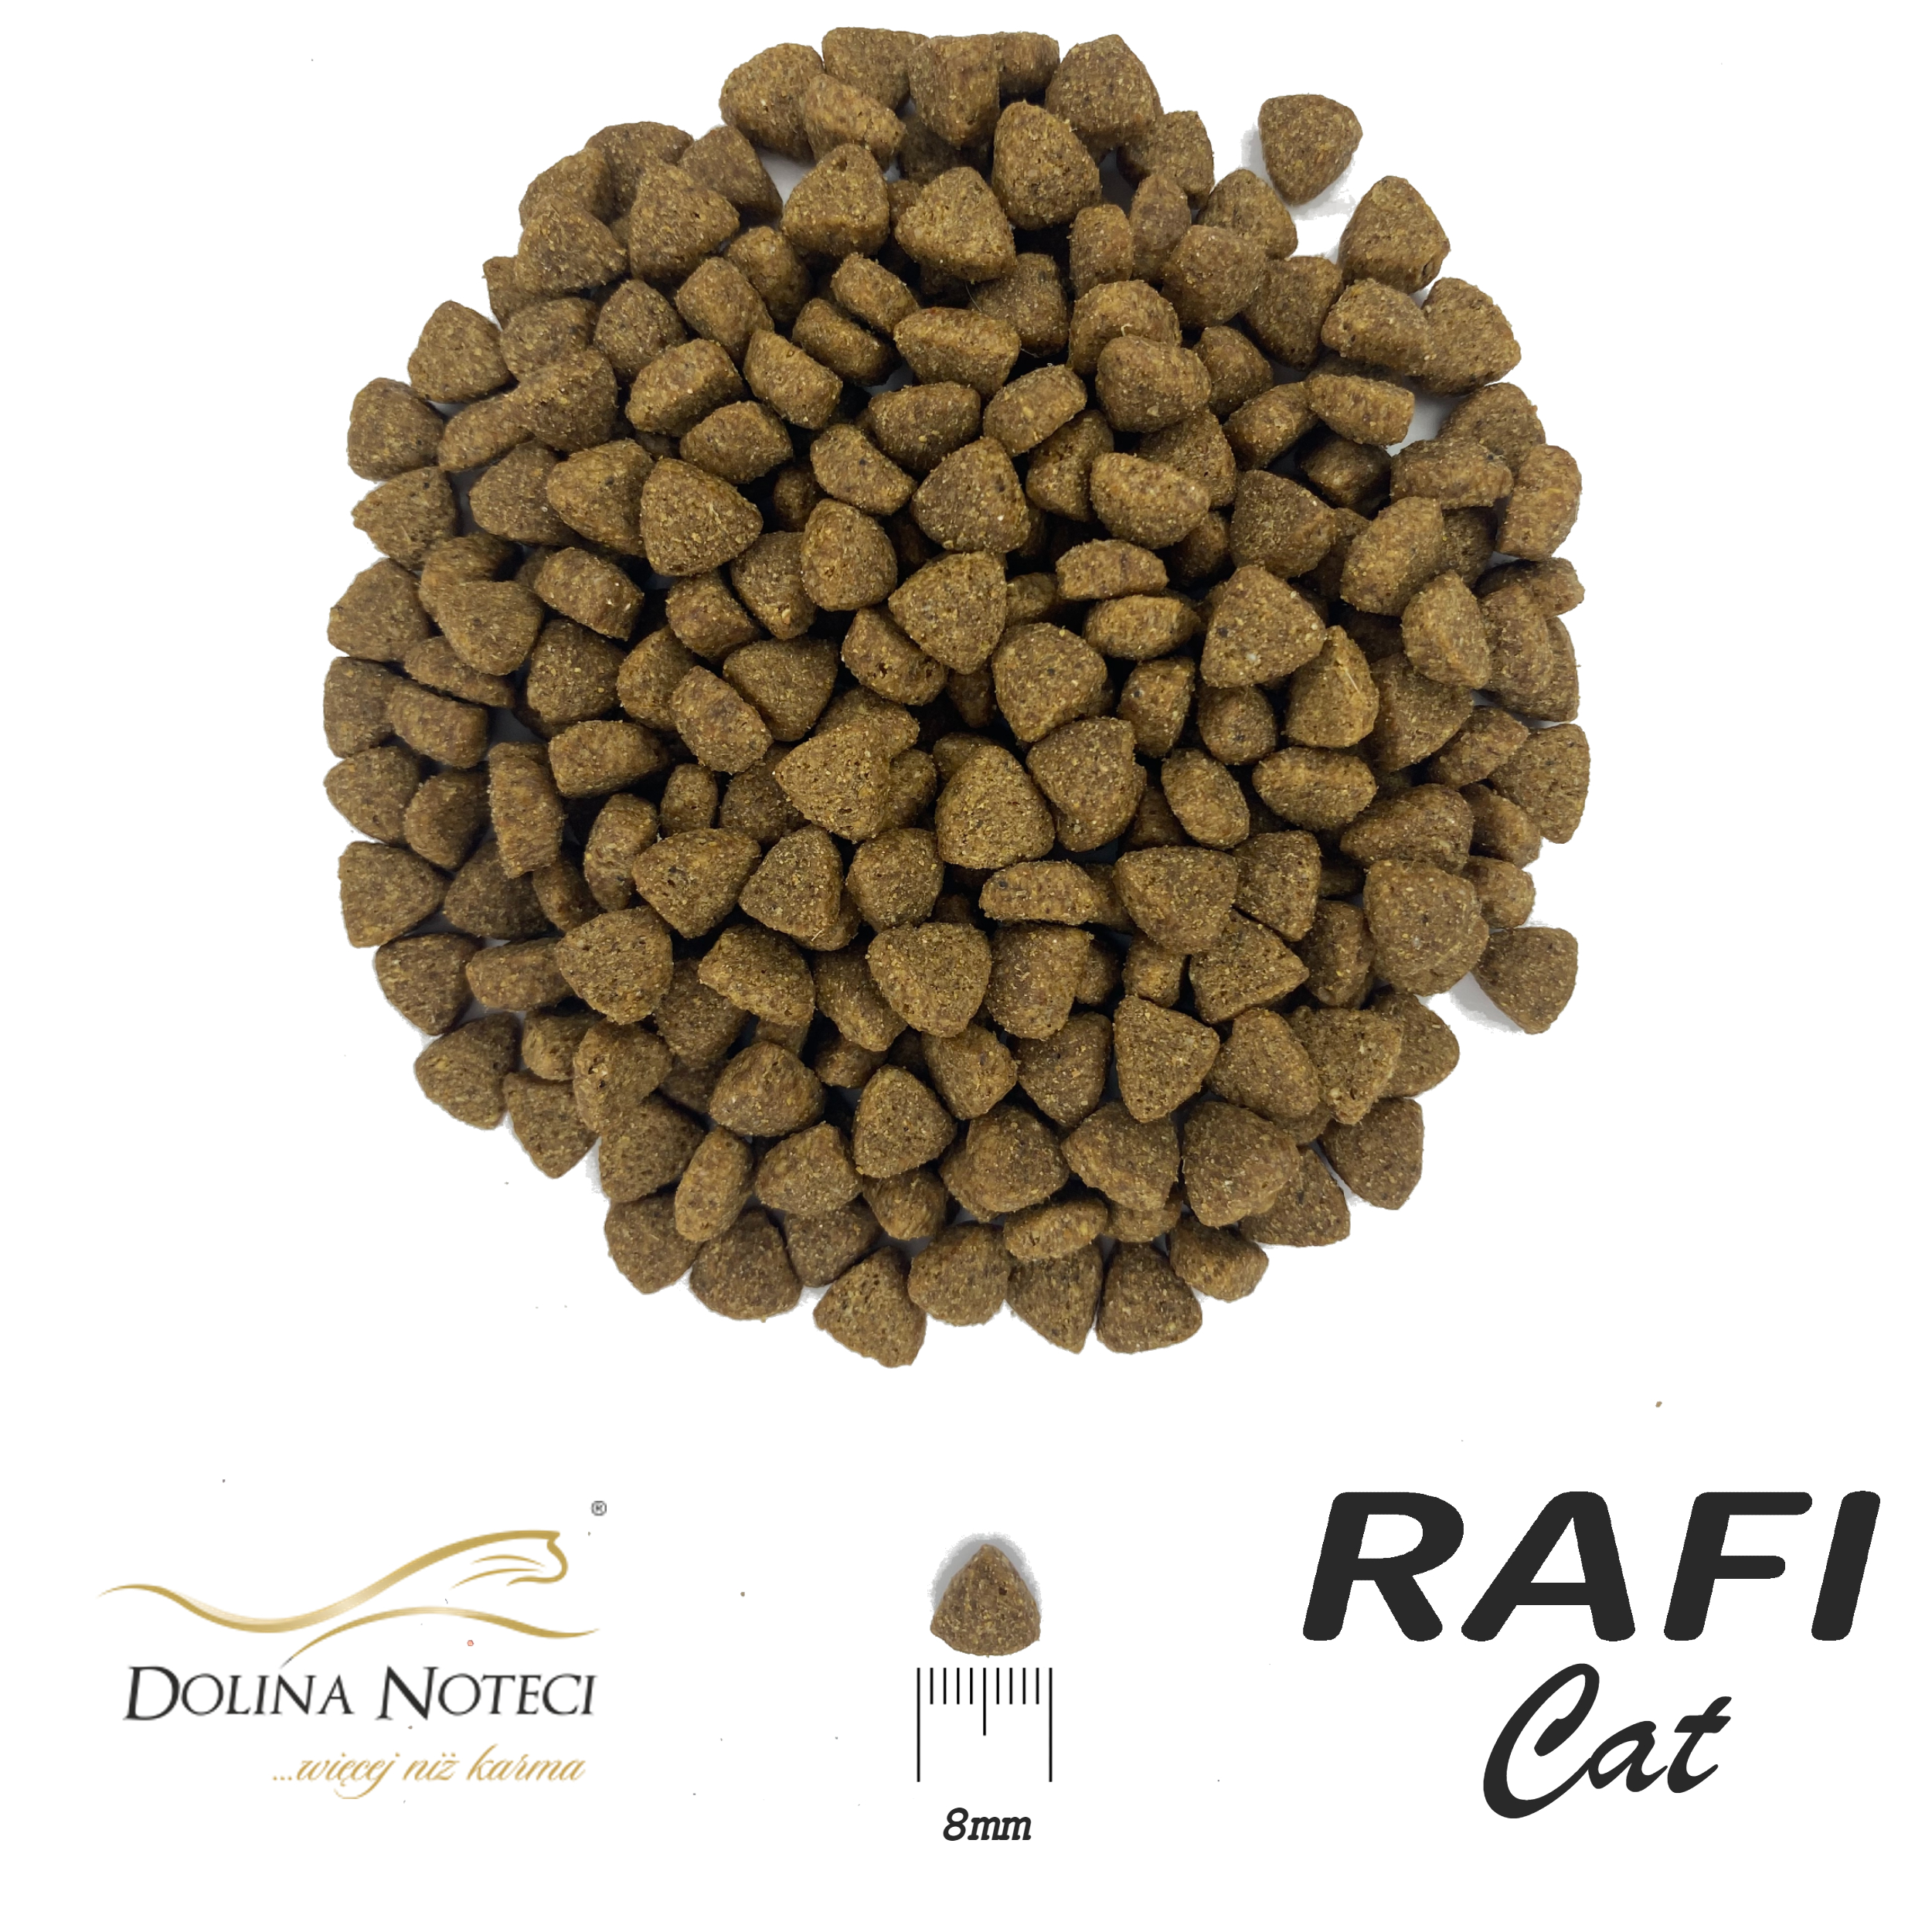 Сухой корм для взрослых котов Dolina Noteci Rafi Сat с ягненком 1.5 кг - фото 2